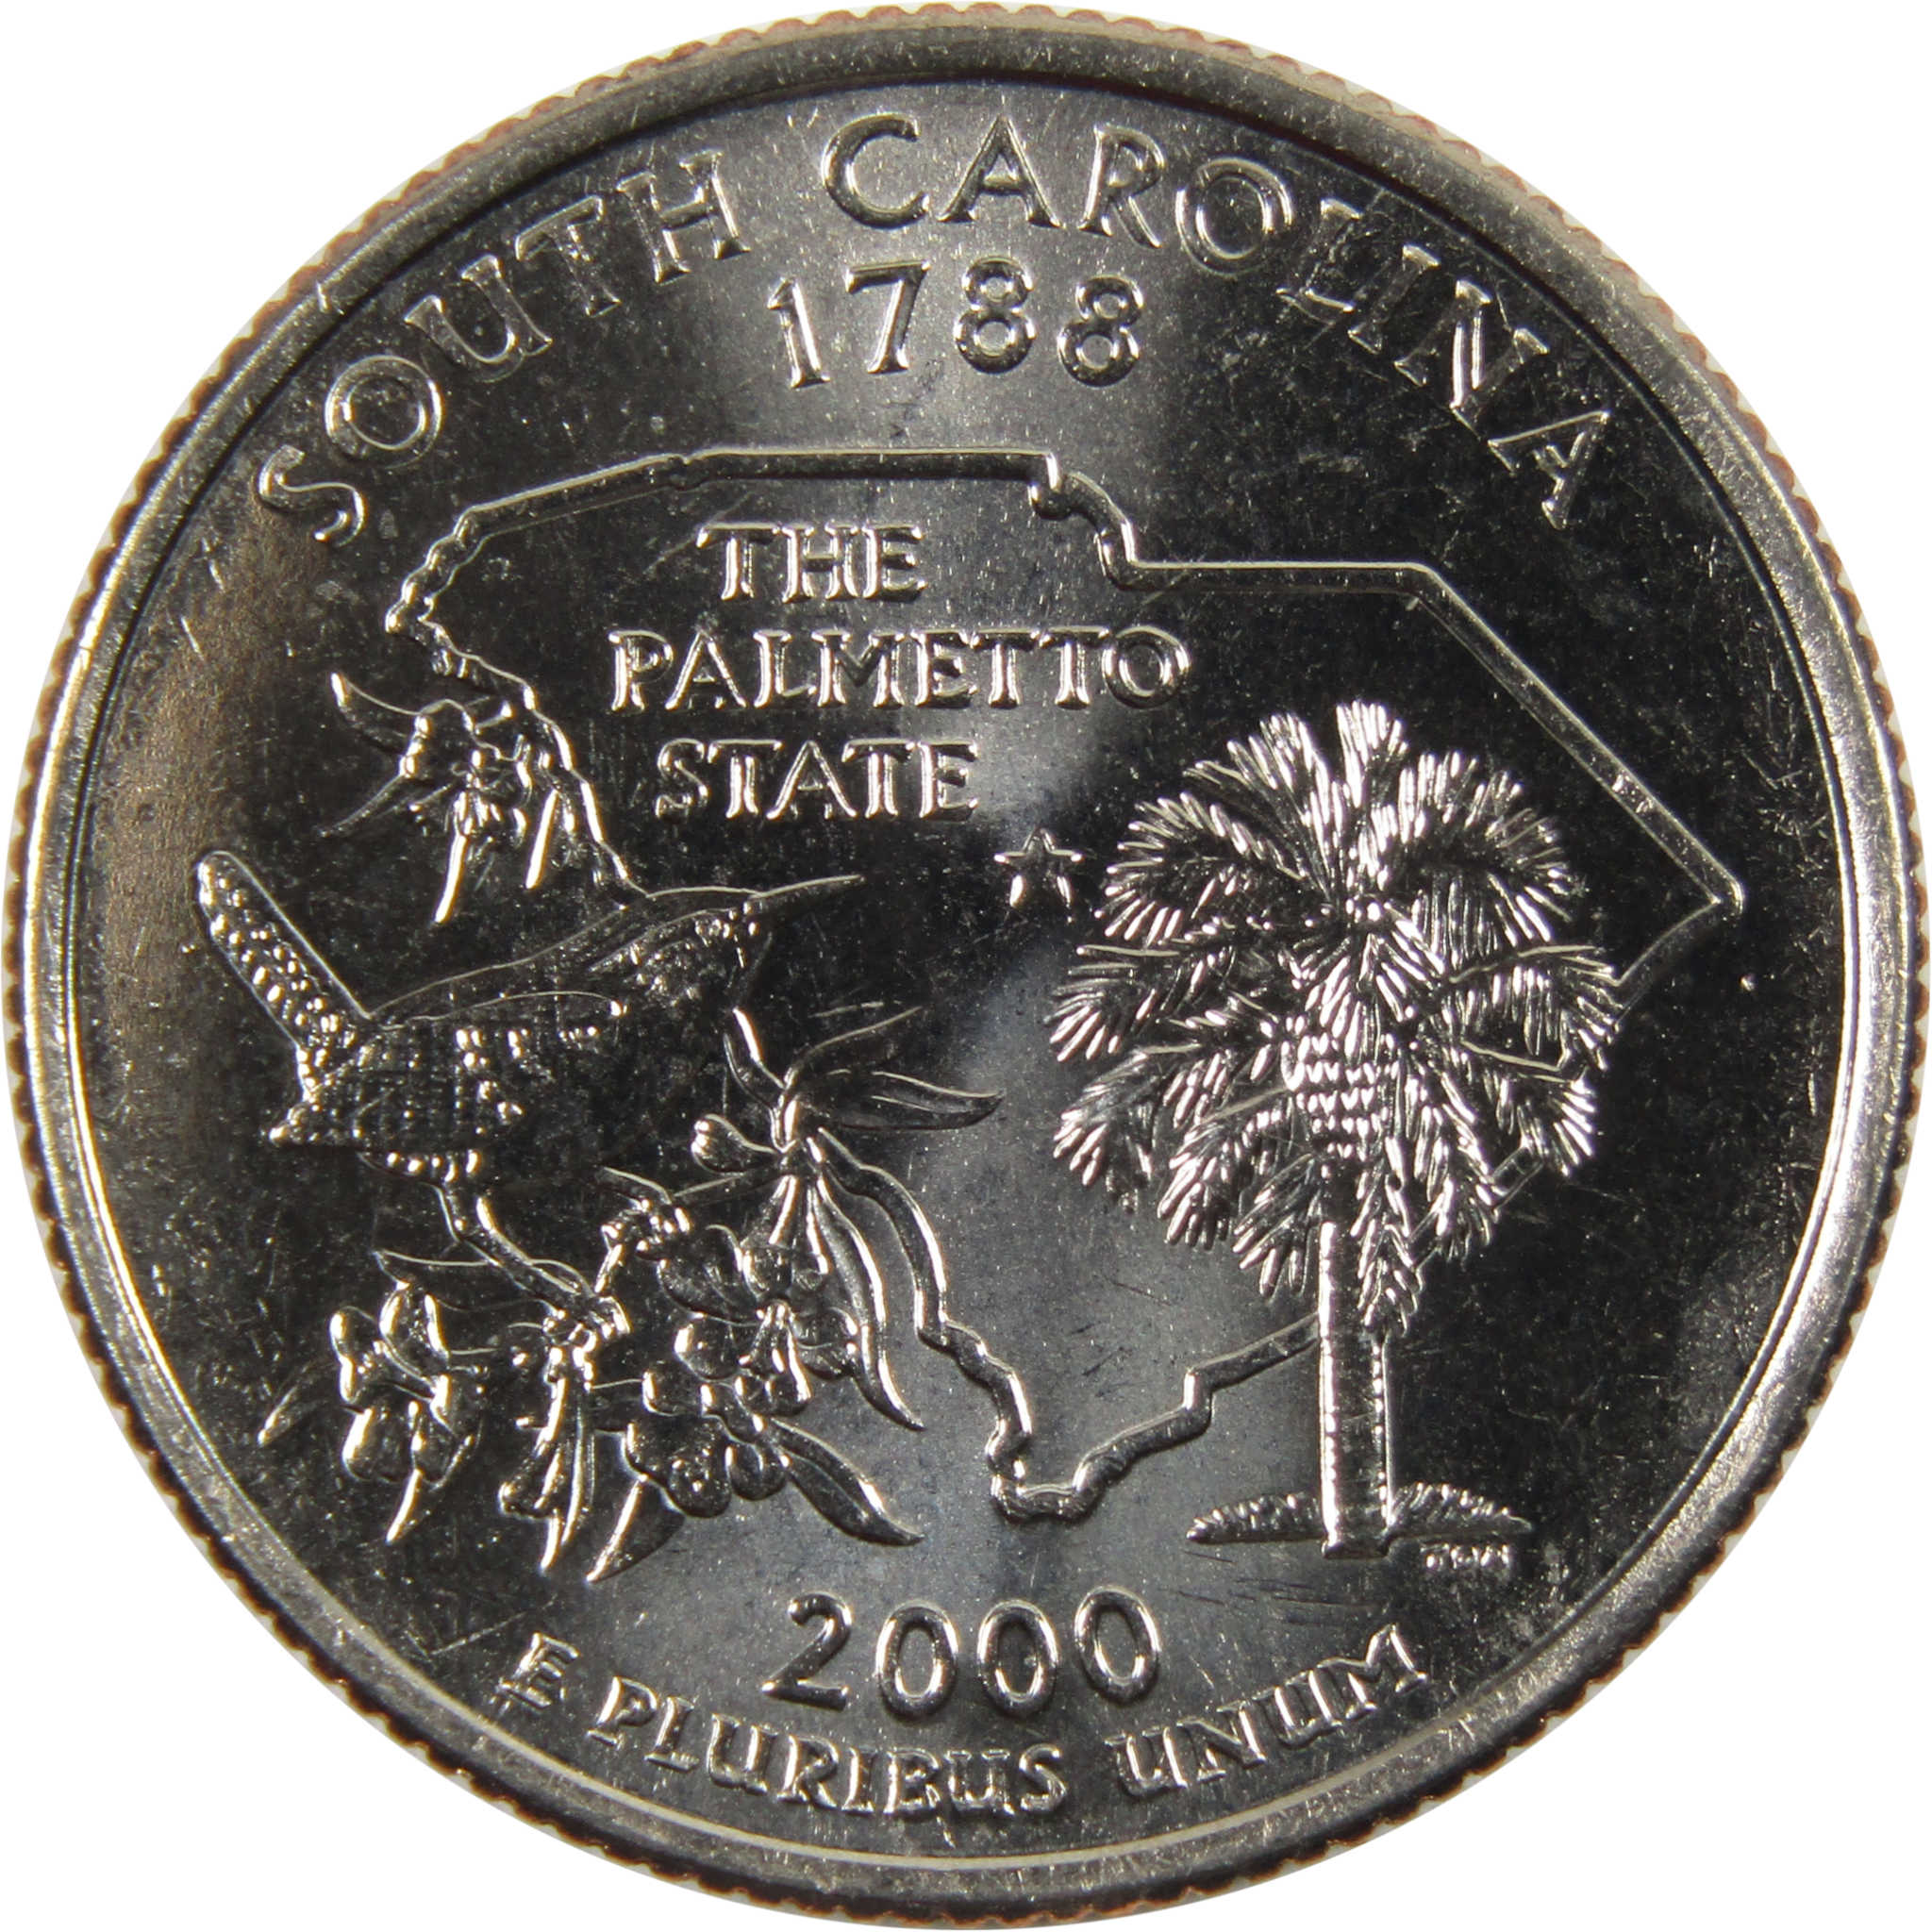 2000 D South Carolina State Quarter BU Uncirculated Clad 25c Coin